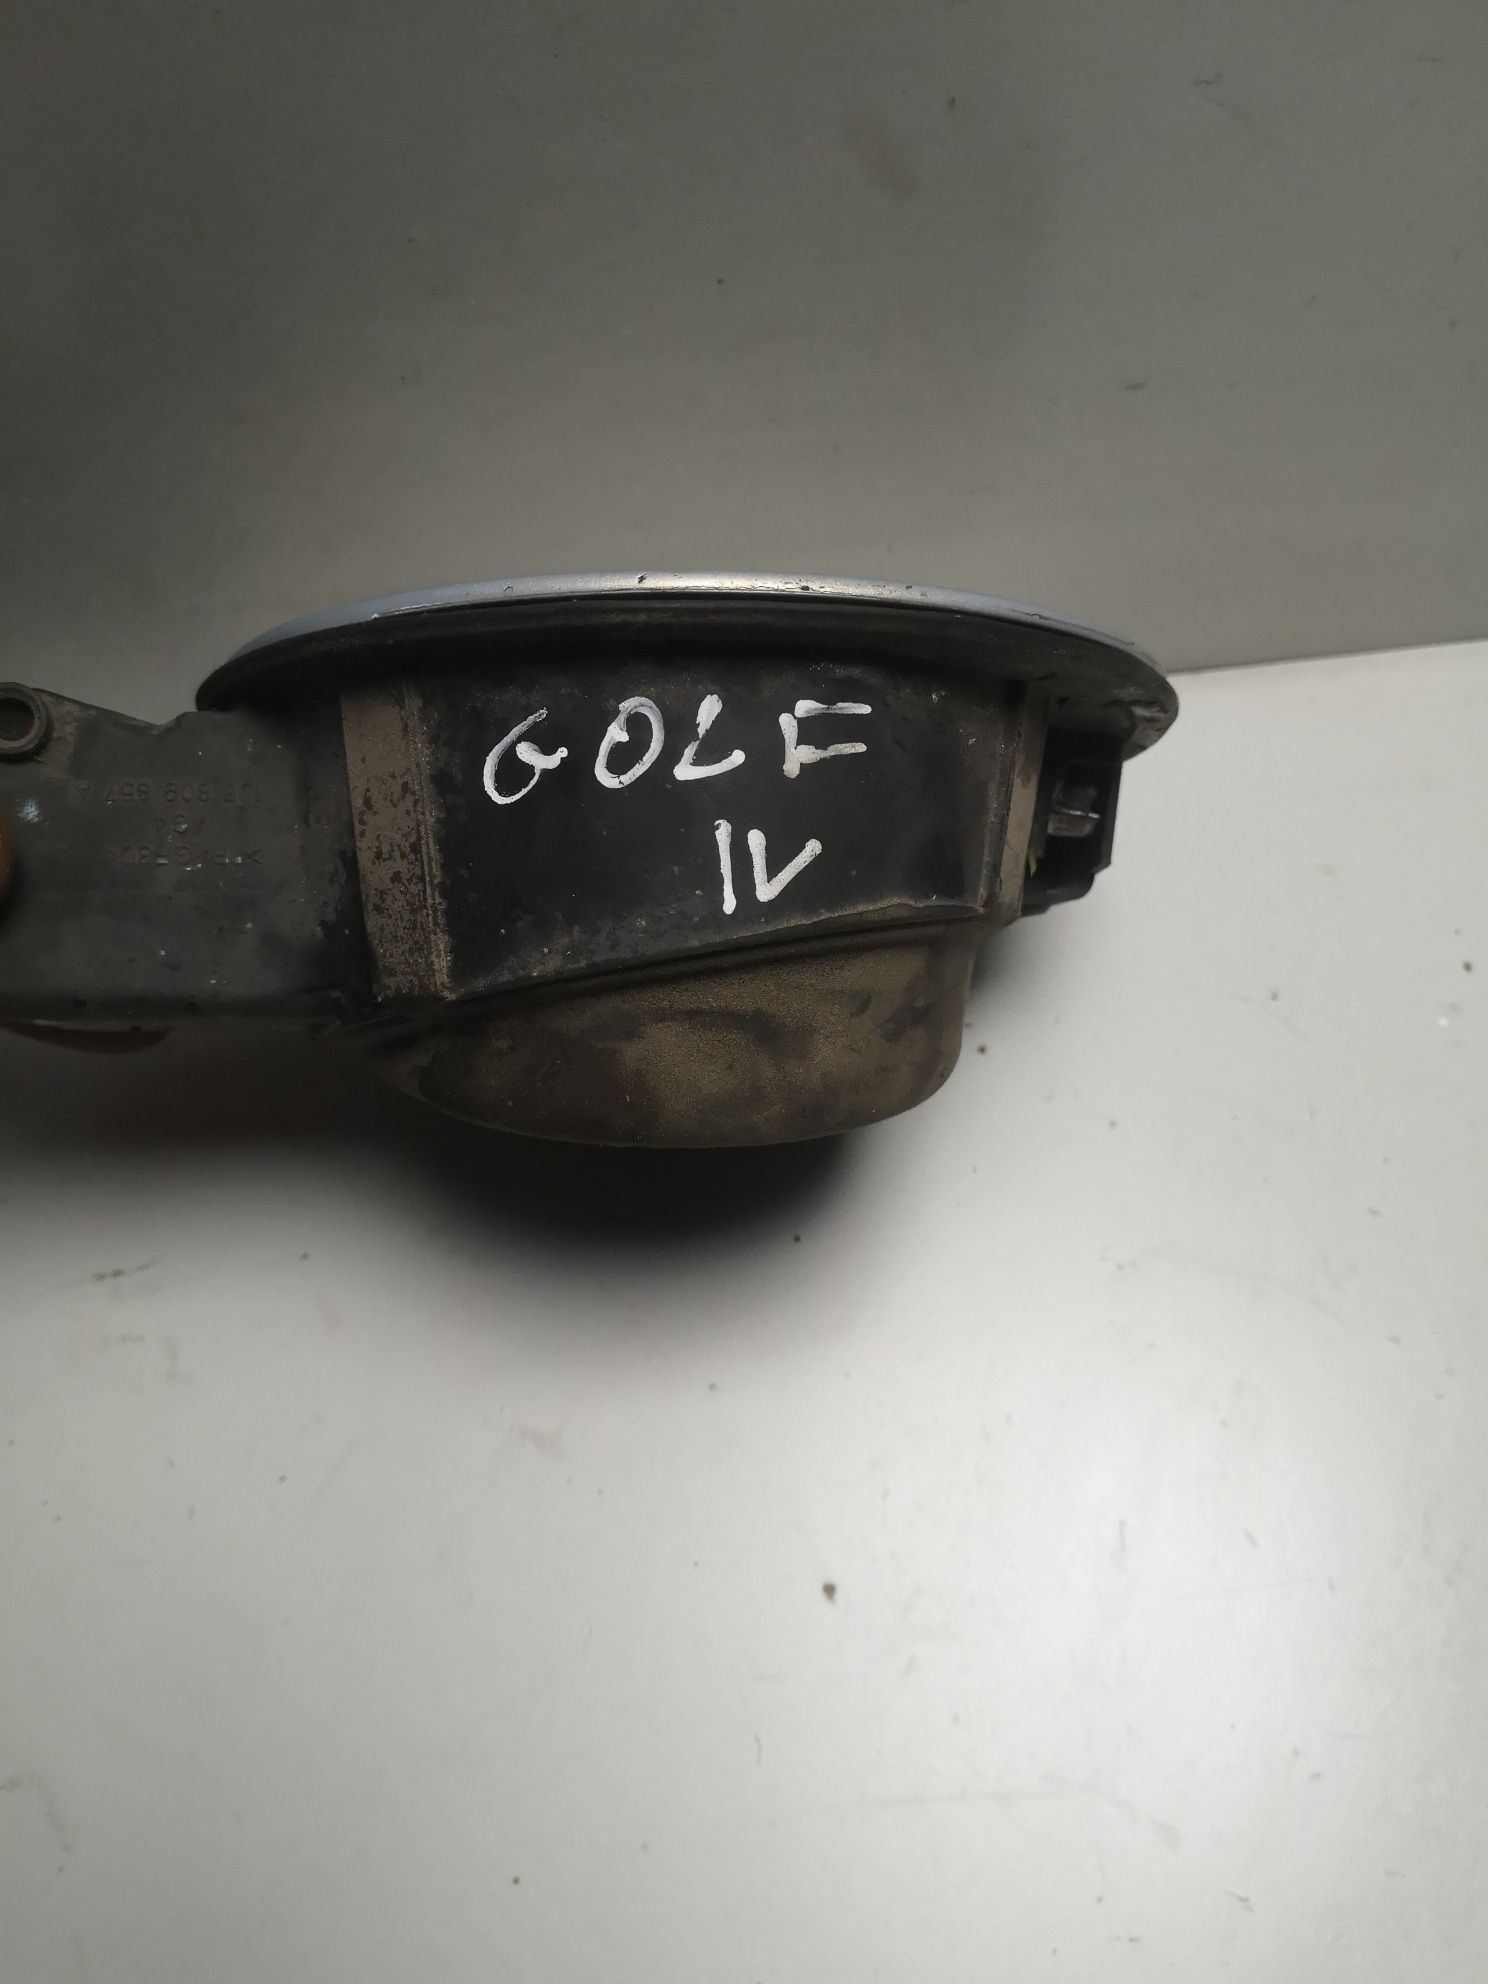 Vw Golf IV 4 klapka paliwa srebrna